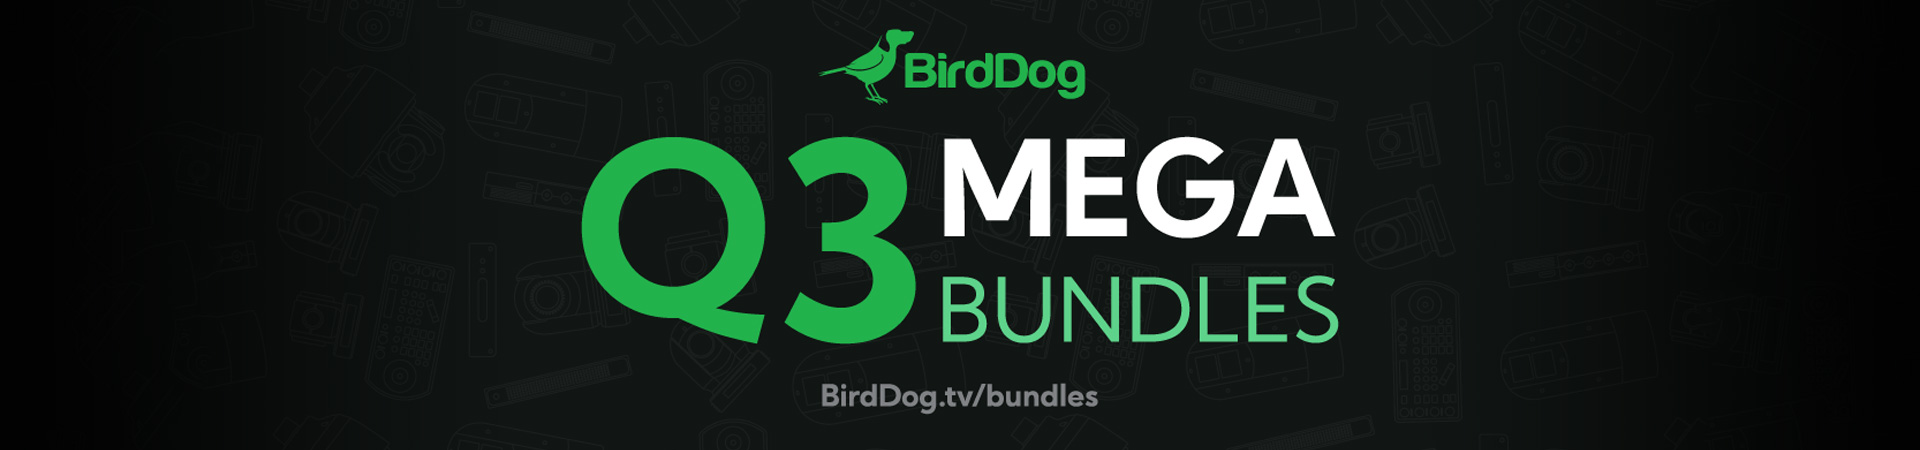 Q3 BirdDog MEGA BUNDLES